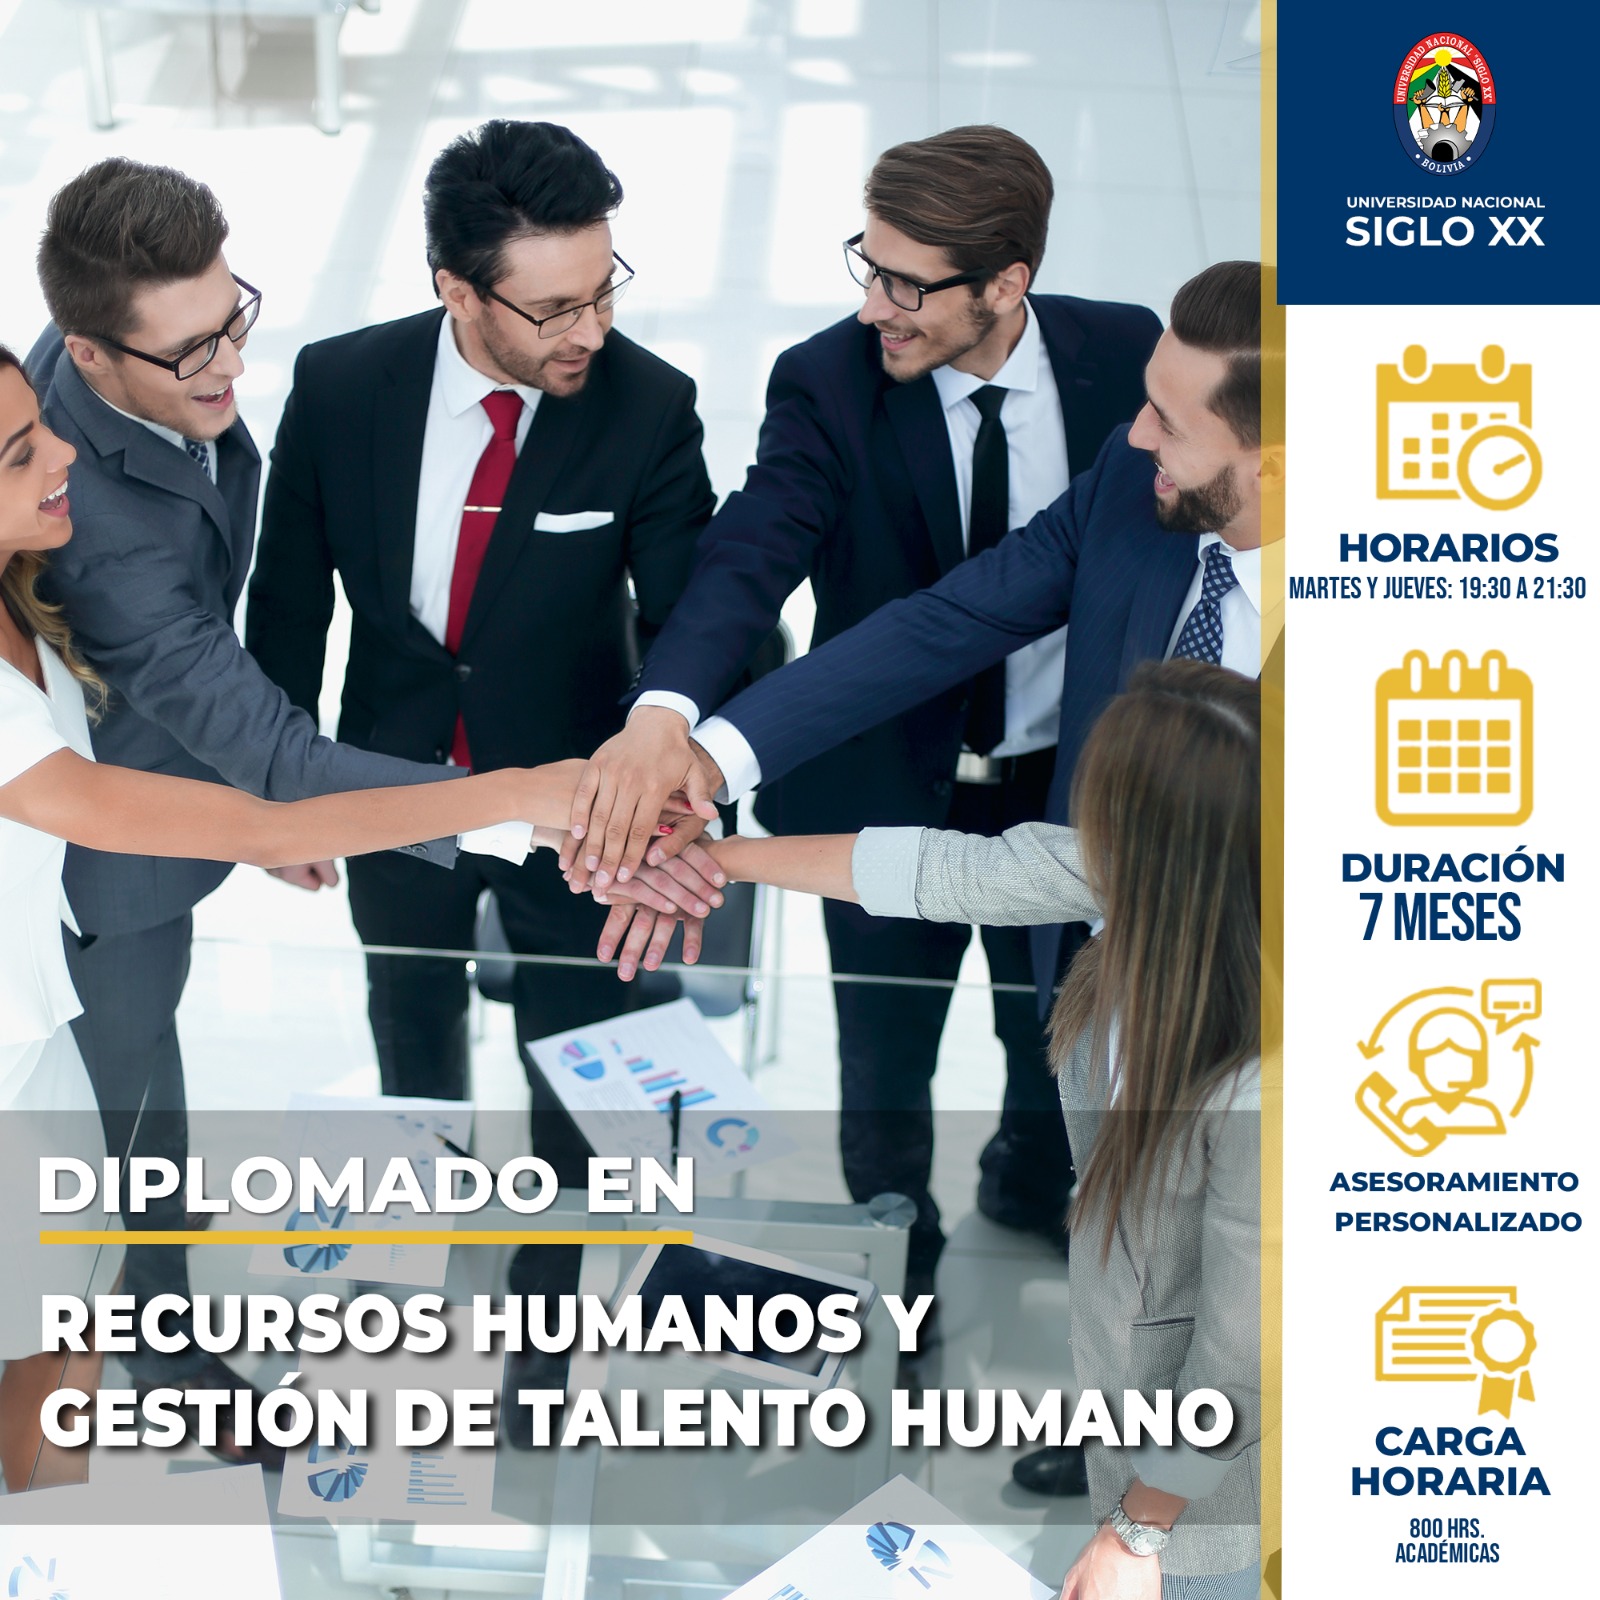 Diplomado En Recursos Humanos y Gestión de Talento Humano.